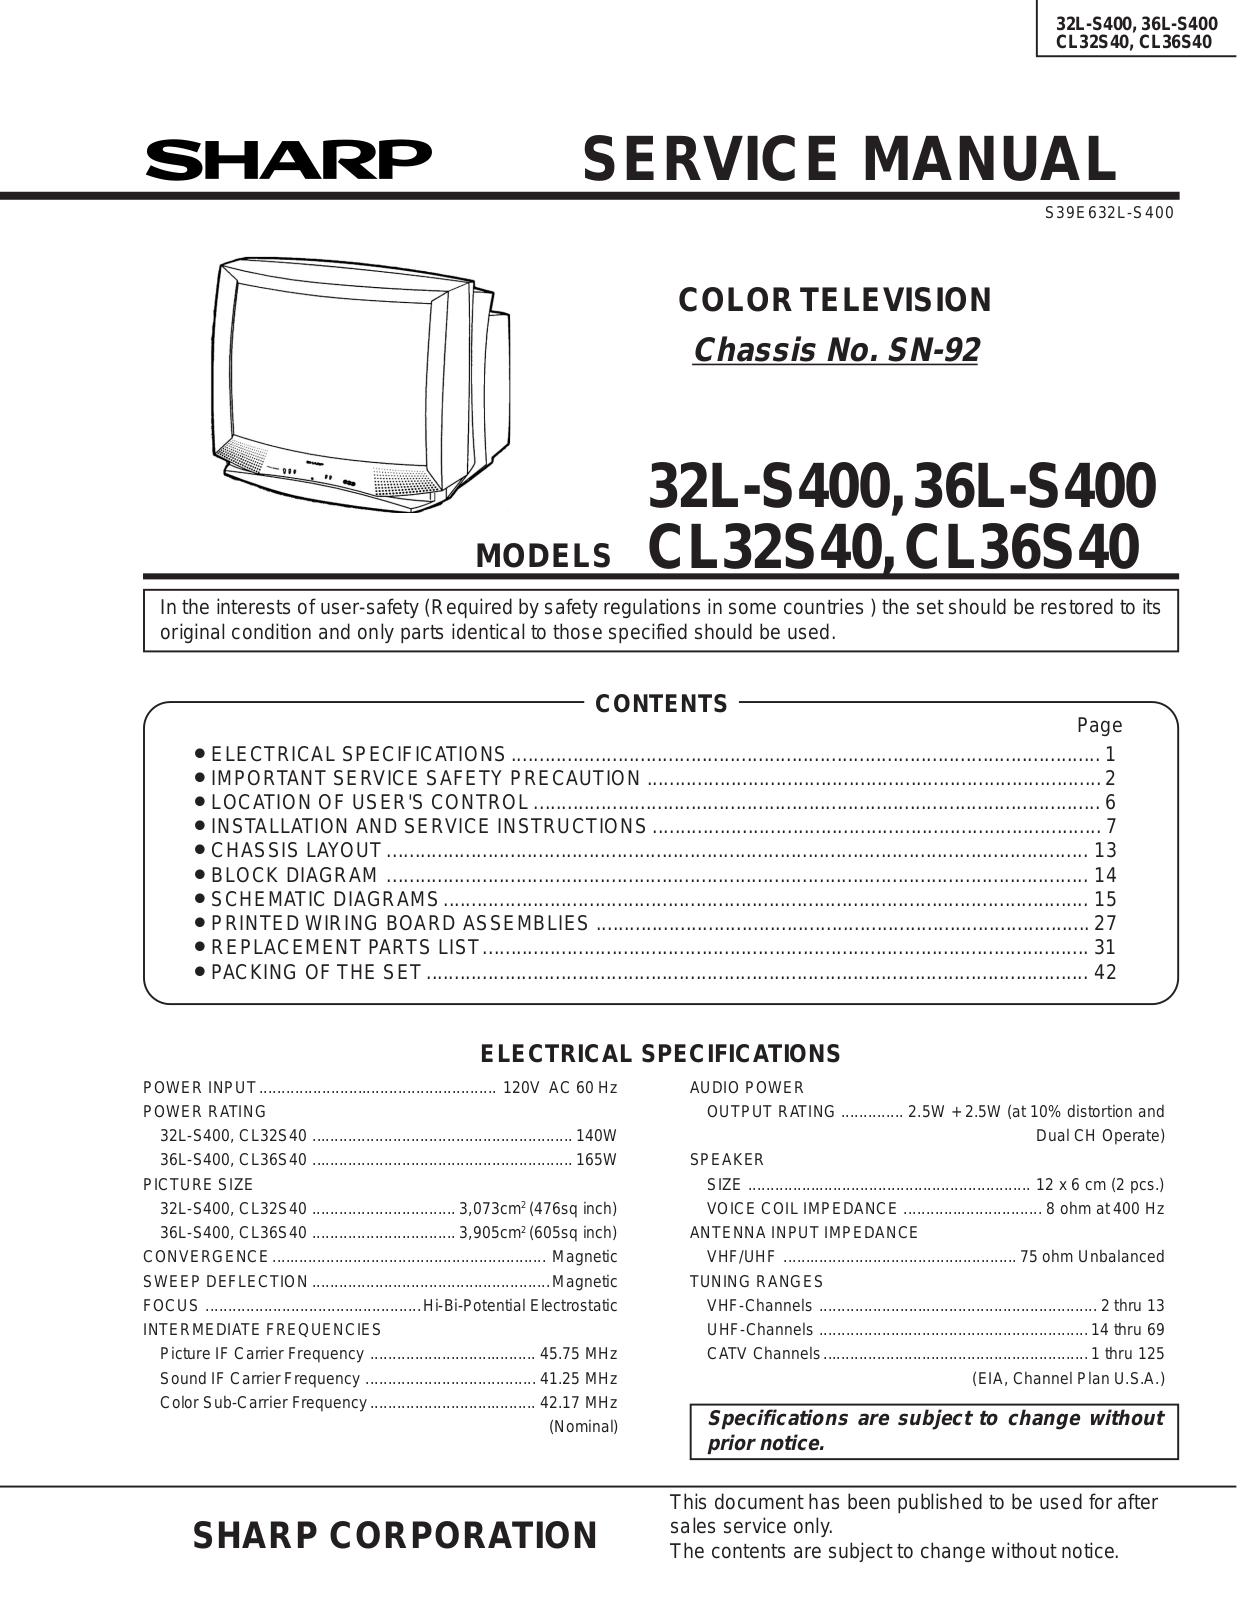 SHARP 32L-S400, 36L-S400, CL32S40, CL36S40 Service Manual